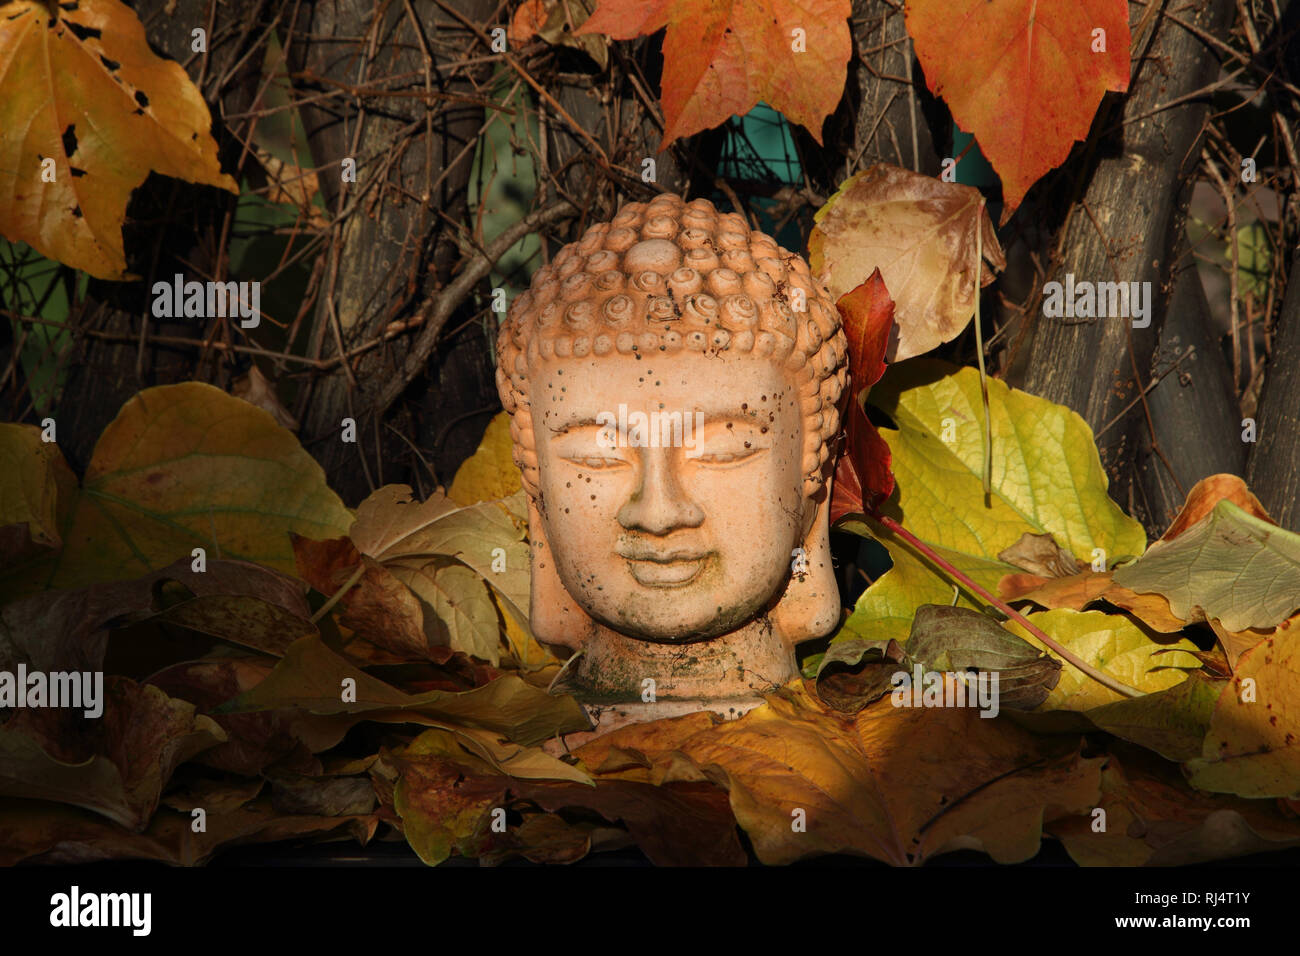 Buddhafigur zwischen Wilden Wein Stock Photo